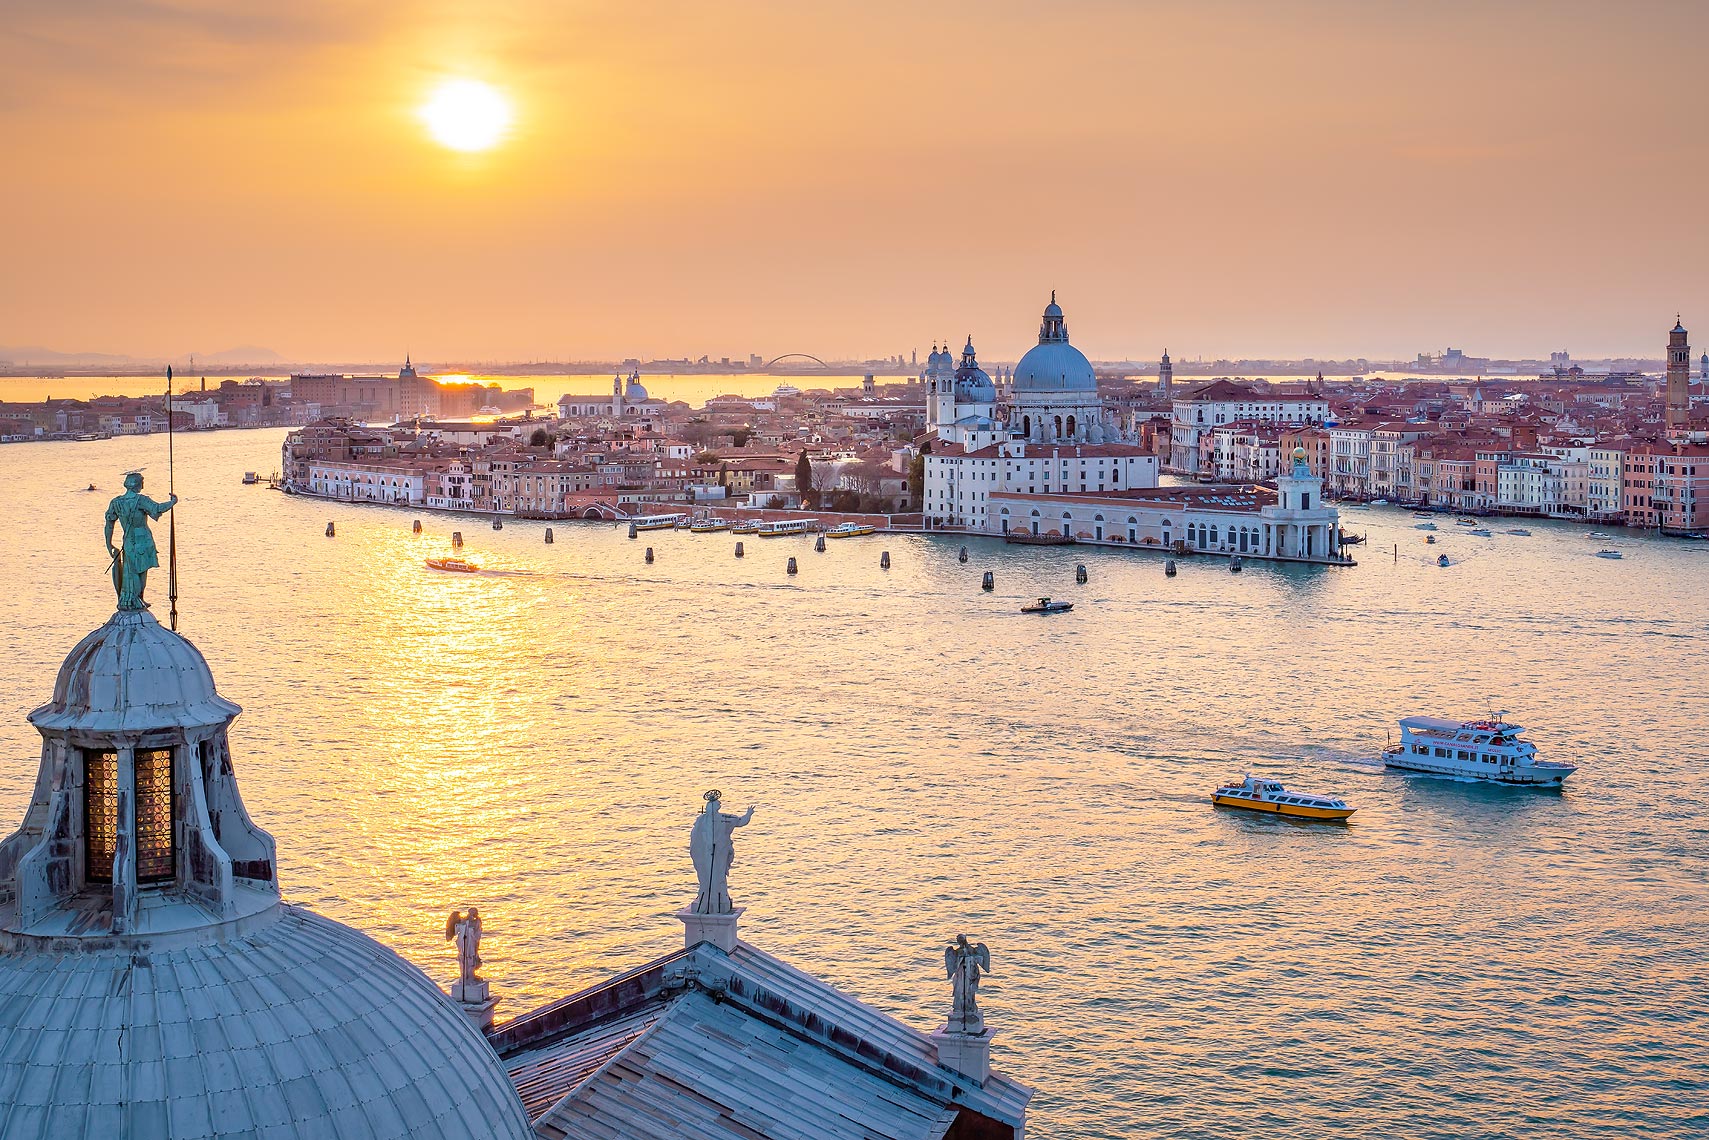 Venice, Italy as seen from San Giorgio